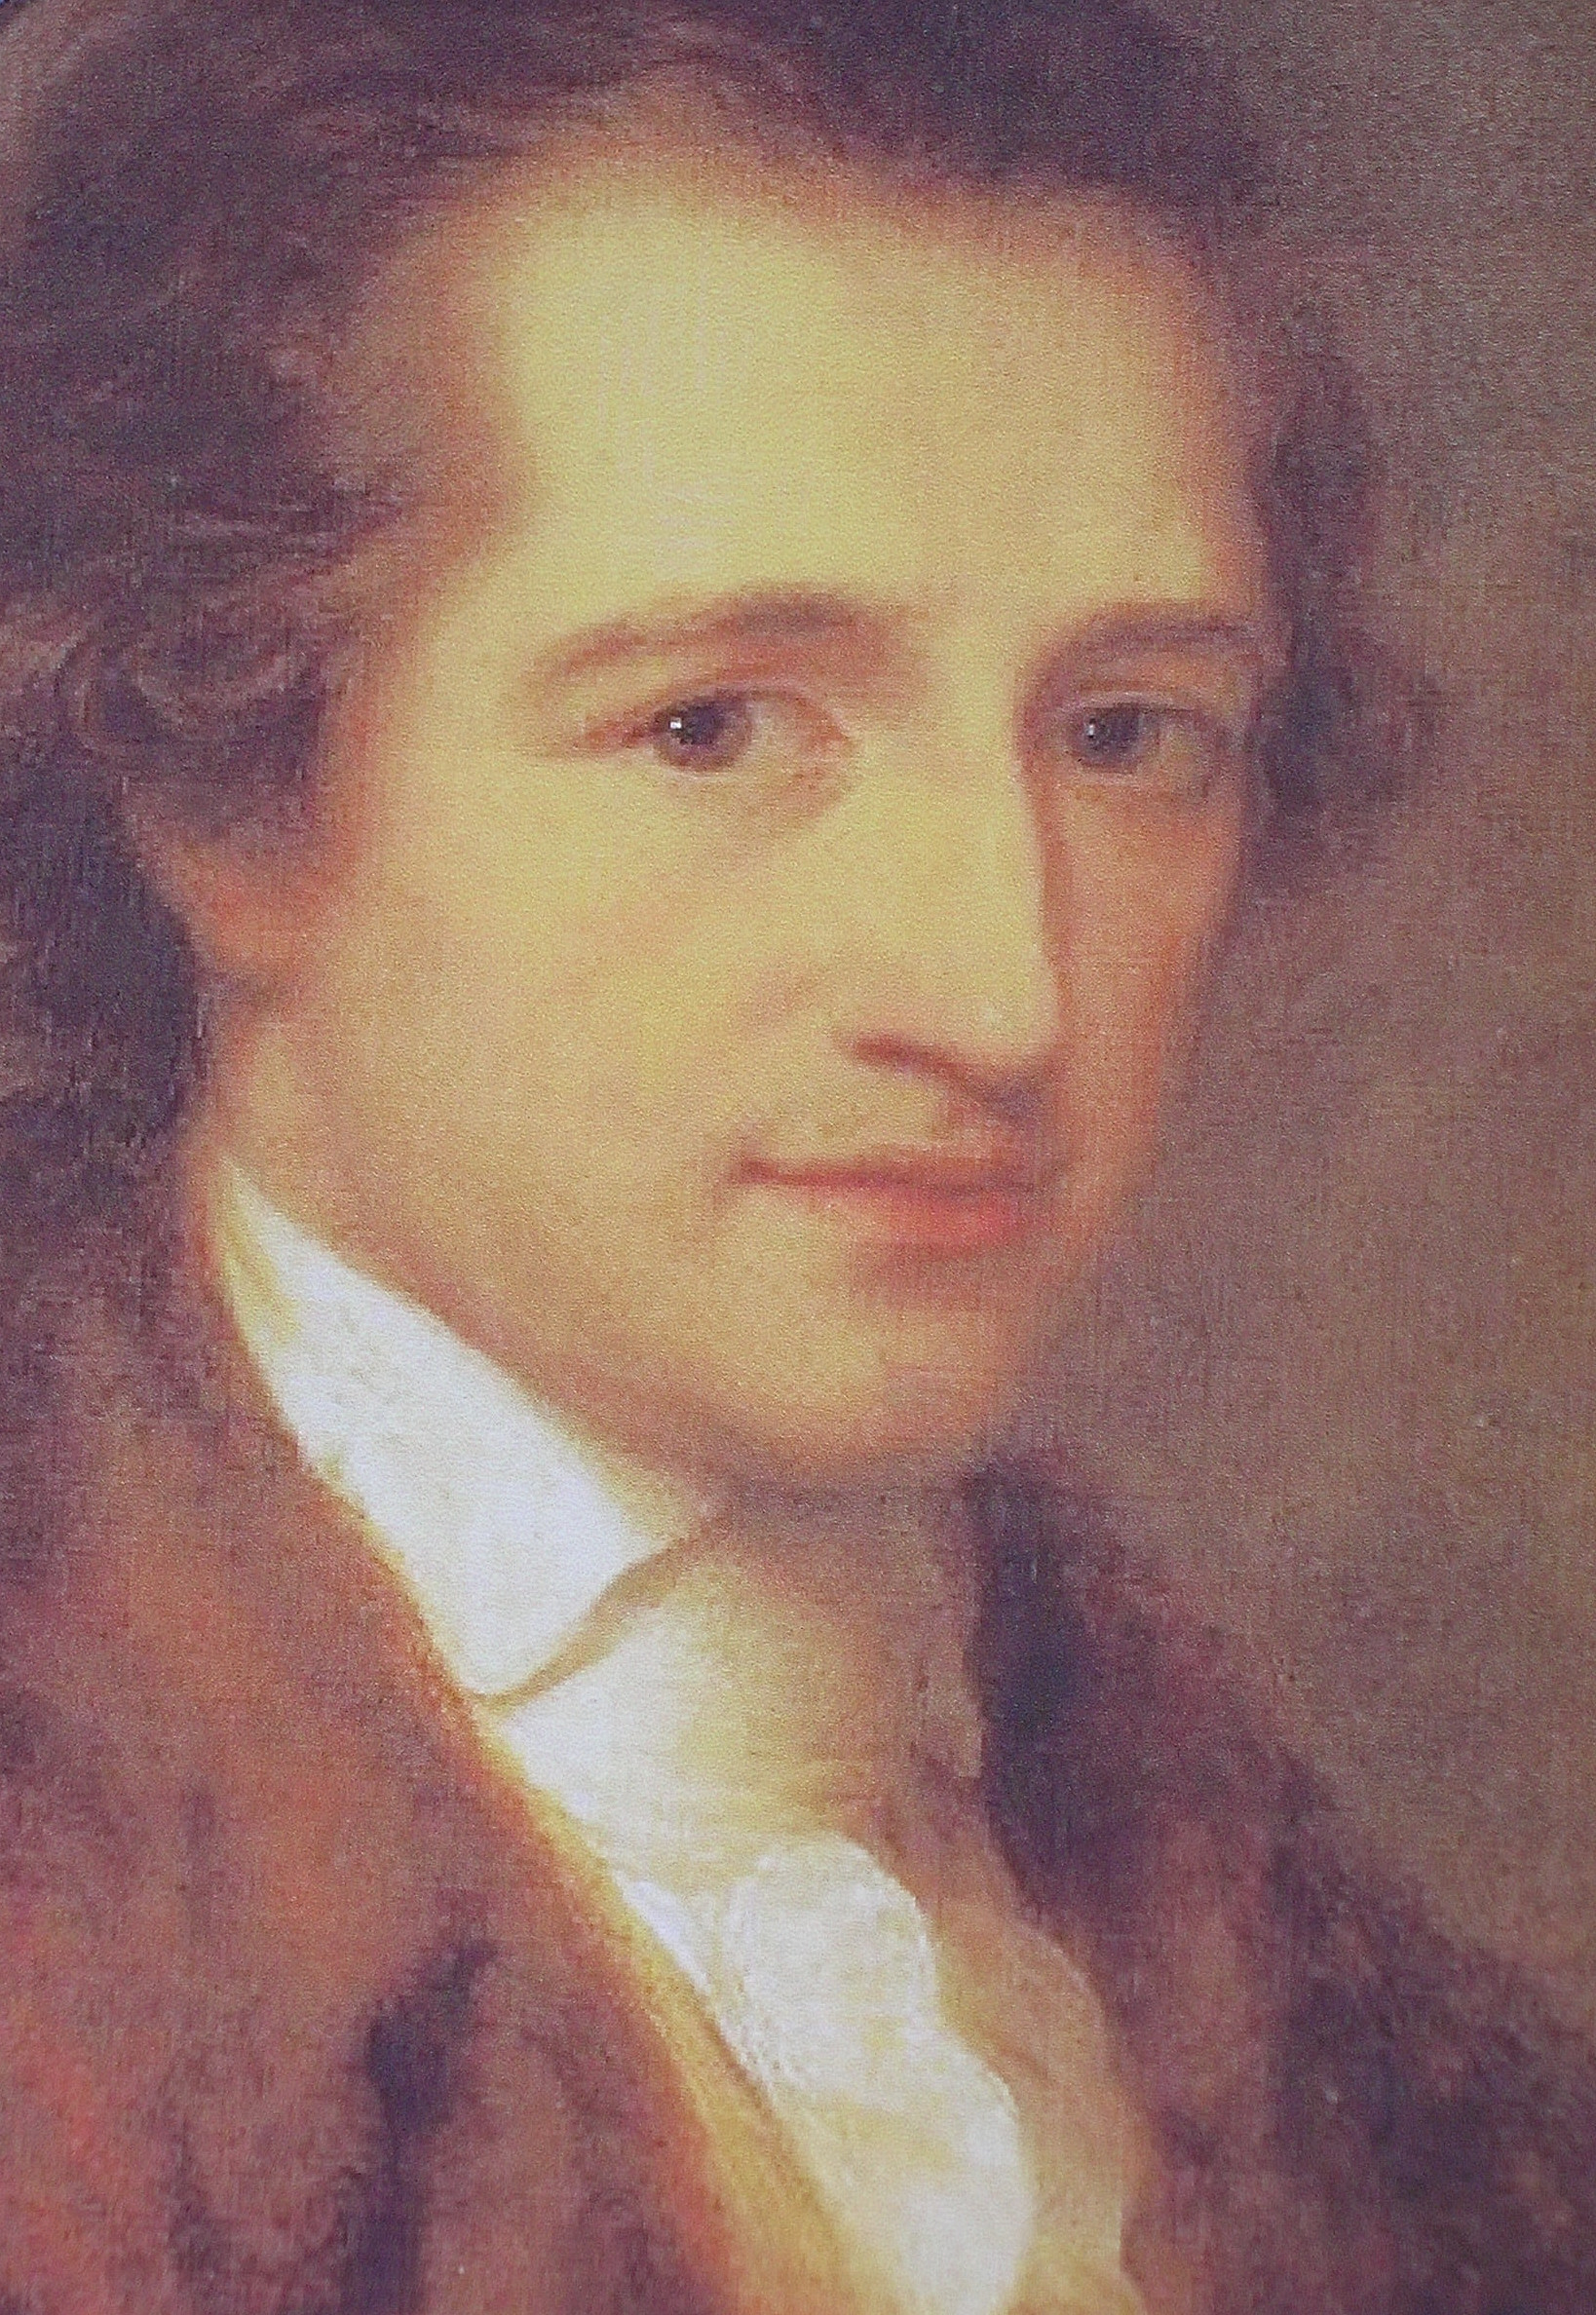 Der junge Goethe - gemalt von Angelica Kauffmann 1787 Quelle: Wikipedia http://de.wikipedia.org/w/index.php?title=Datei:Der_junge_Goethe,_gemalt_von_Angelica_Kauffmann_1787.JPG